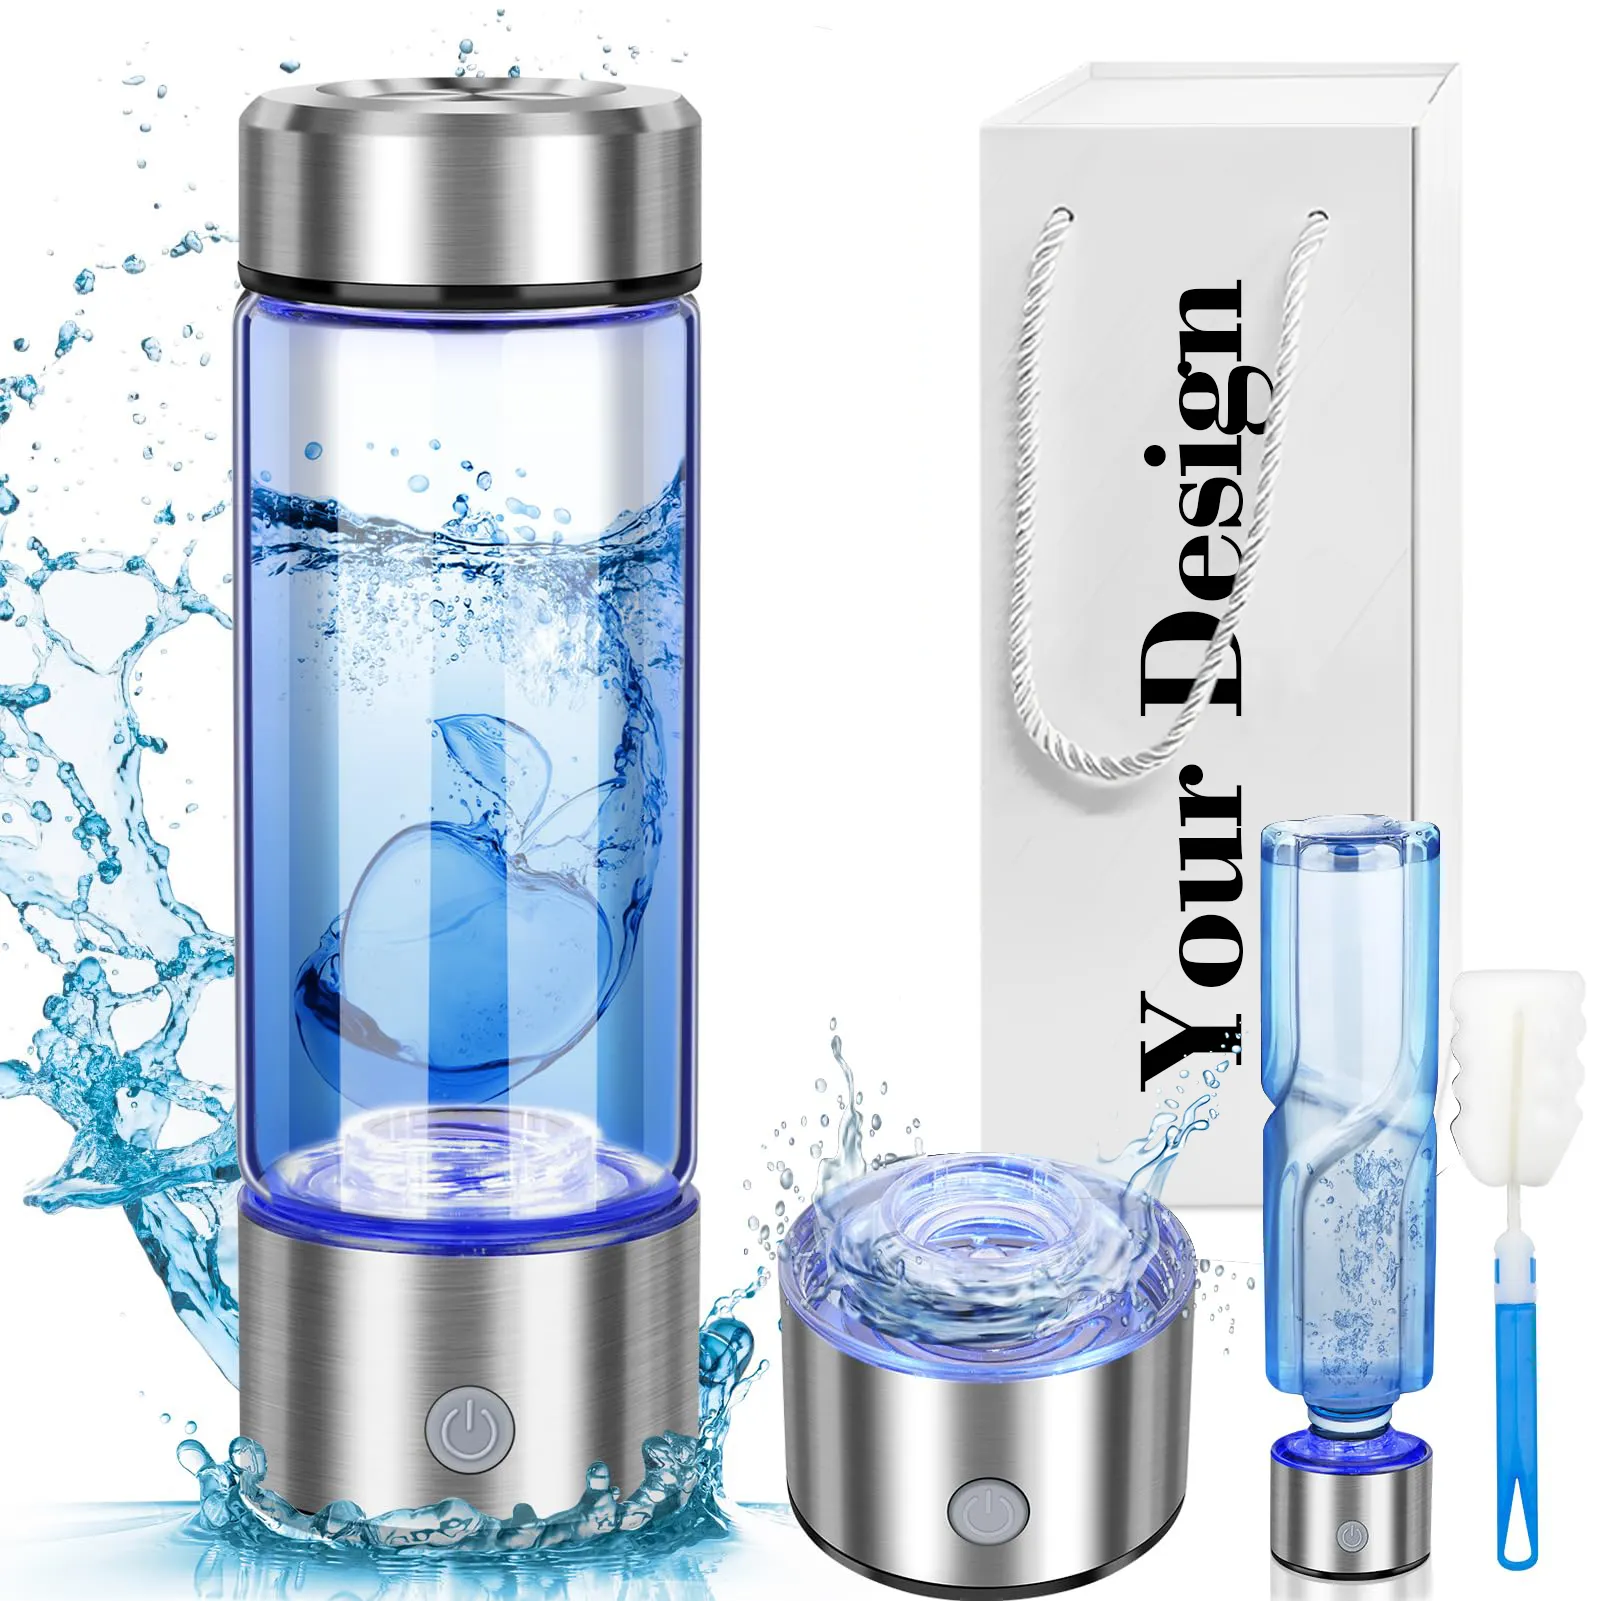 2 in 1 Electric water filter Hydrogen water Generator water bottle Ionizer Maker Hydrogen-Rich Antioxidants ORP Hydrogen bottle